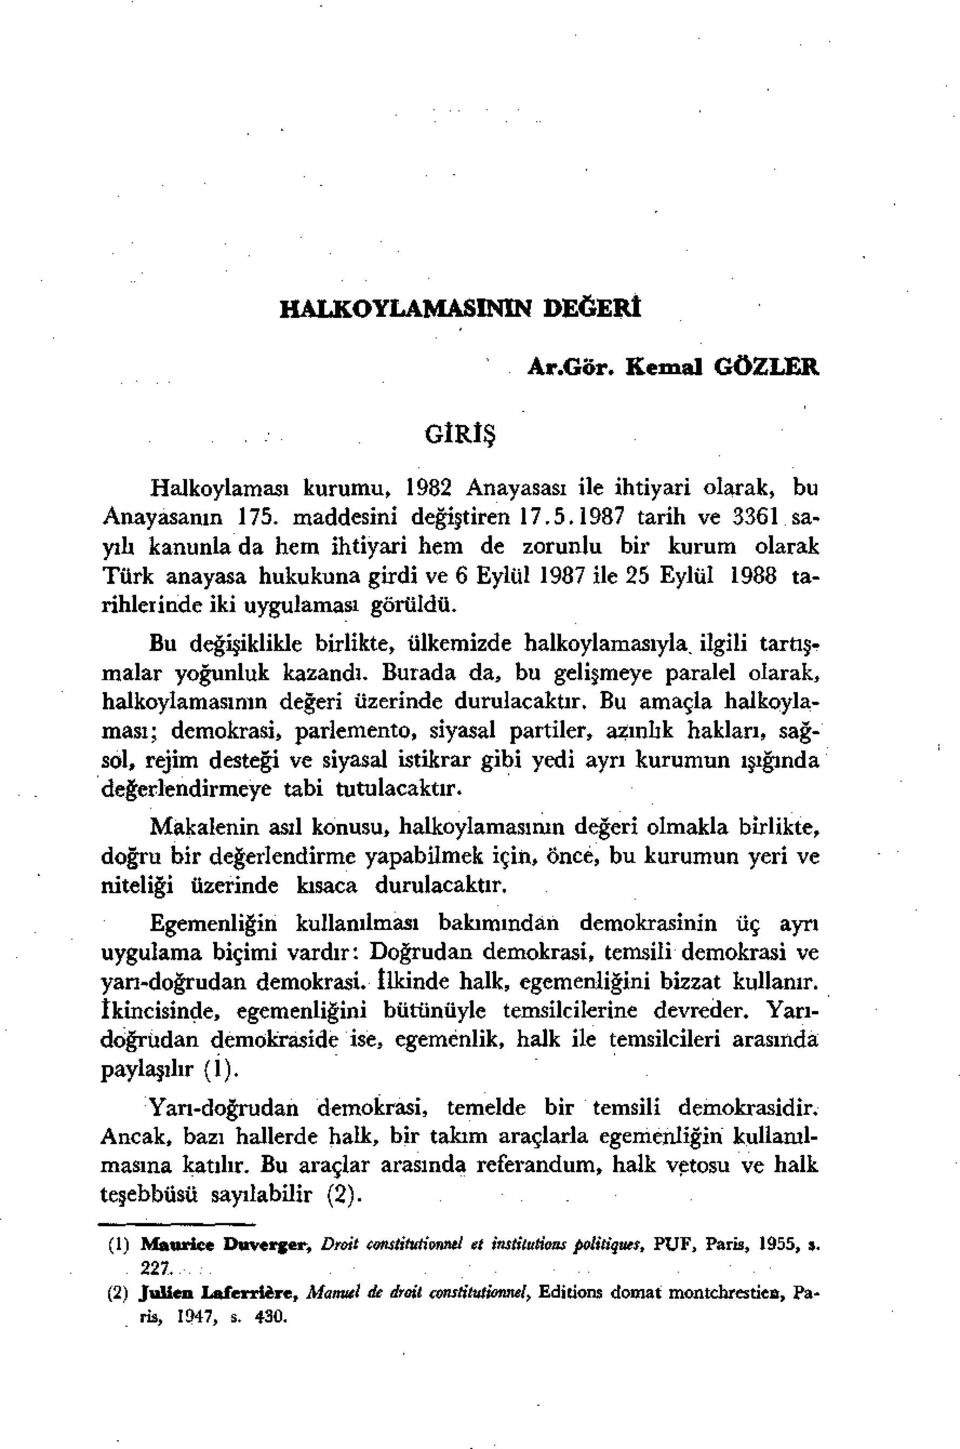 1987 tarih ve 3361 sayılı kanunla da hem ihtiyari hem de zorunlu bir kurum olarak Türk anayasa hukukuna girdi ve 6 Eylül 1987 ile 25 Eylül 1988 tarihlerinde iki uygulaması görüldü.